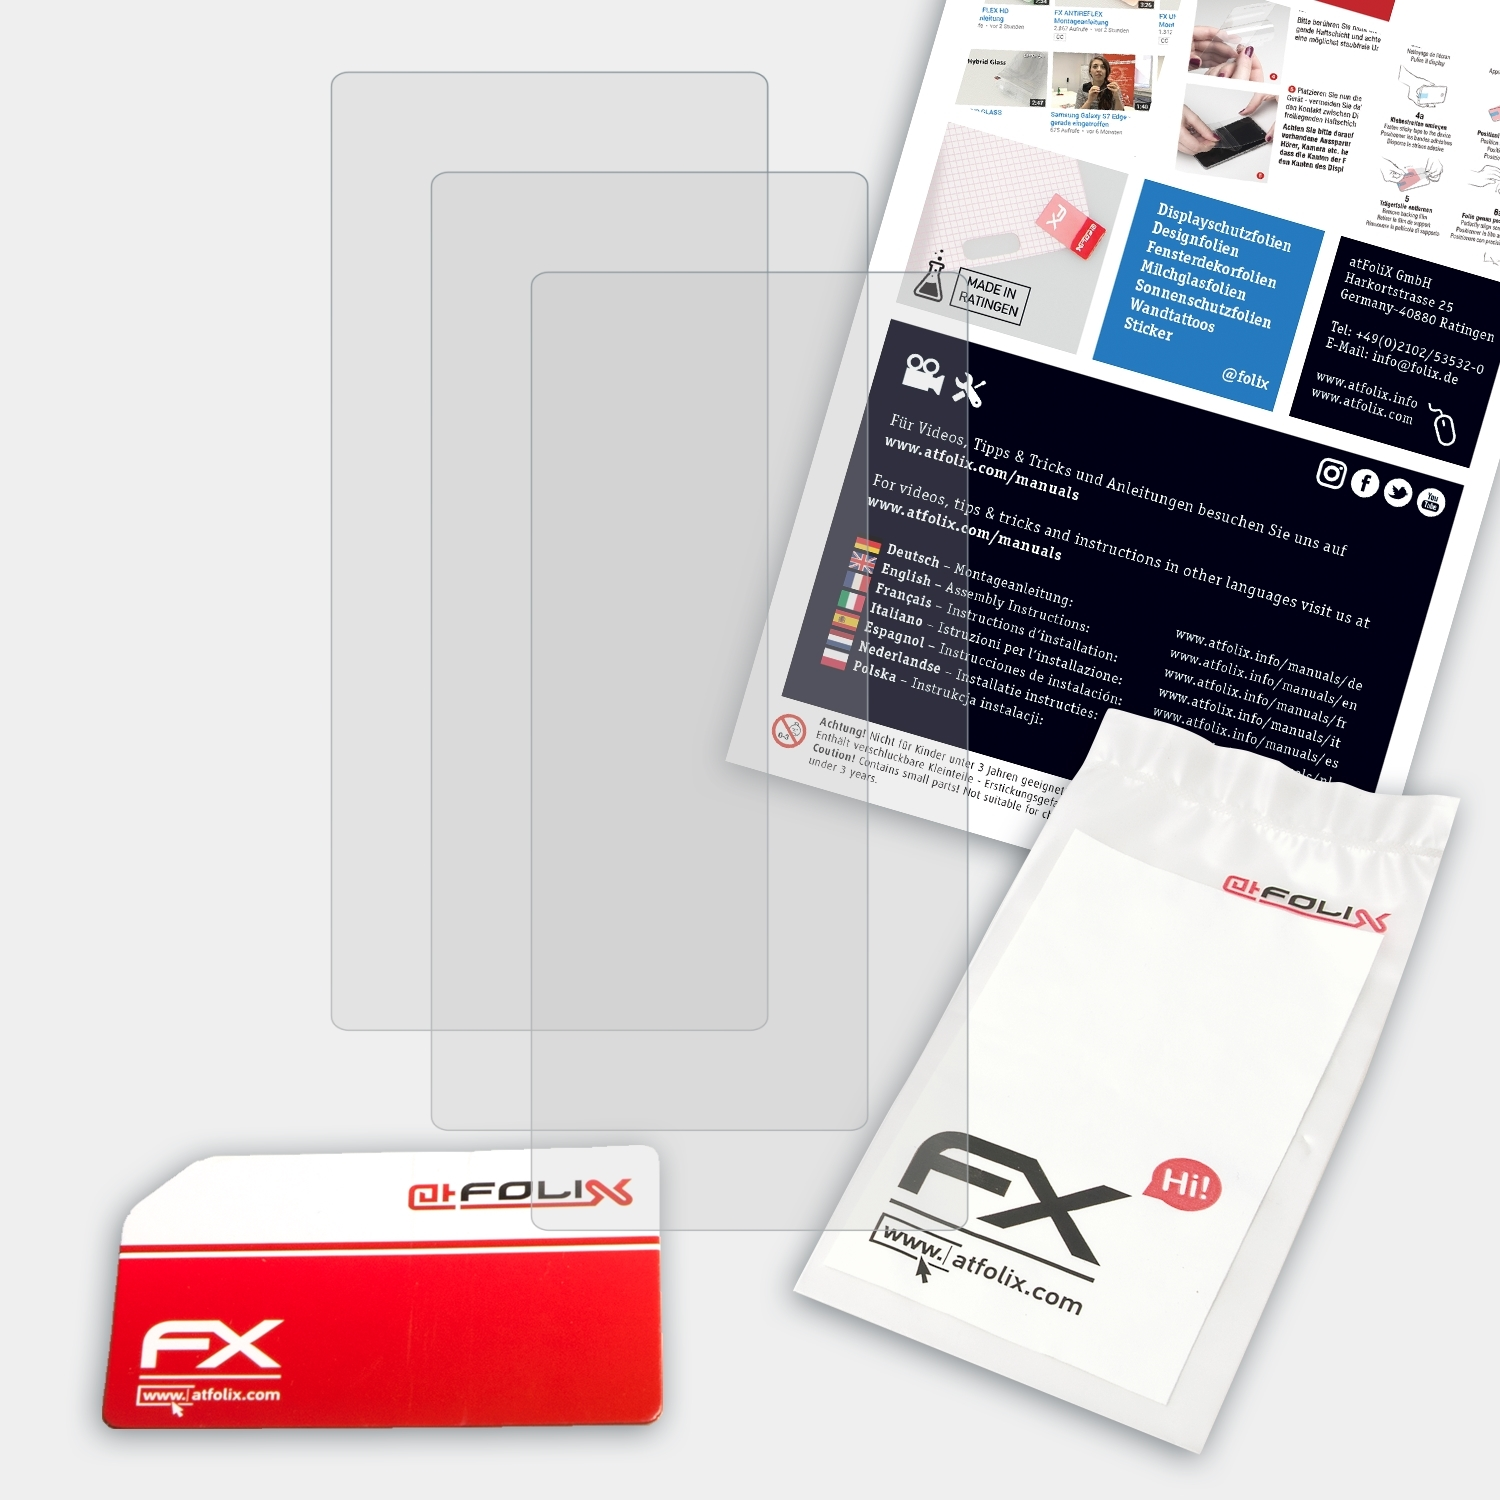 ATFOLIX 3x FX-Antireflex Displayschutz(für M30) AGPTek